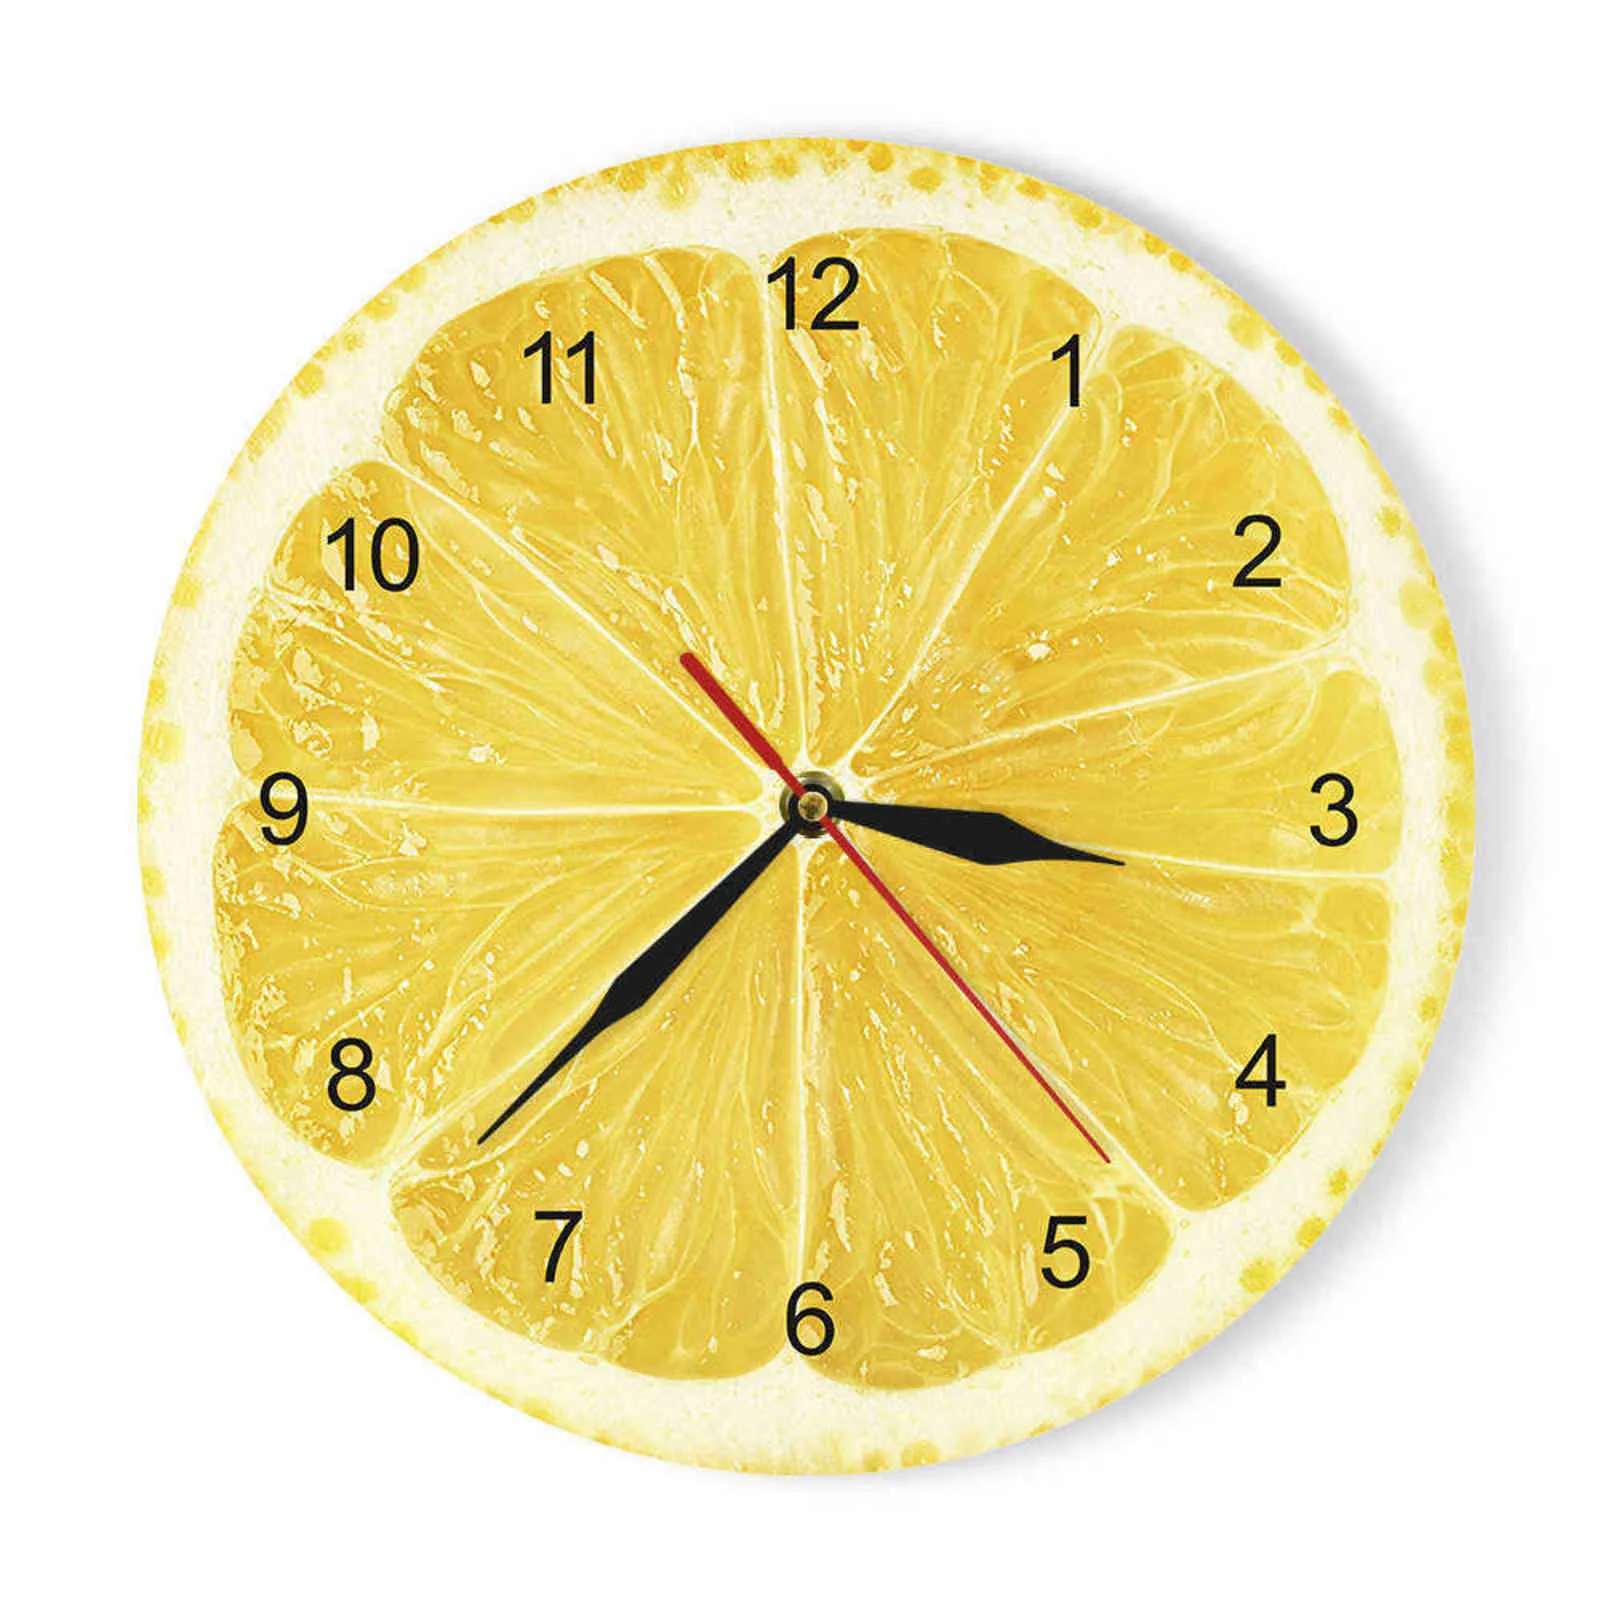 キッチンのオレンジレモンフルーツの壁の時計ポメロモダンデザイン時計ウォッチホーム装飾ウォールアートホロロジュノンチッキングH1102702706